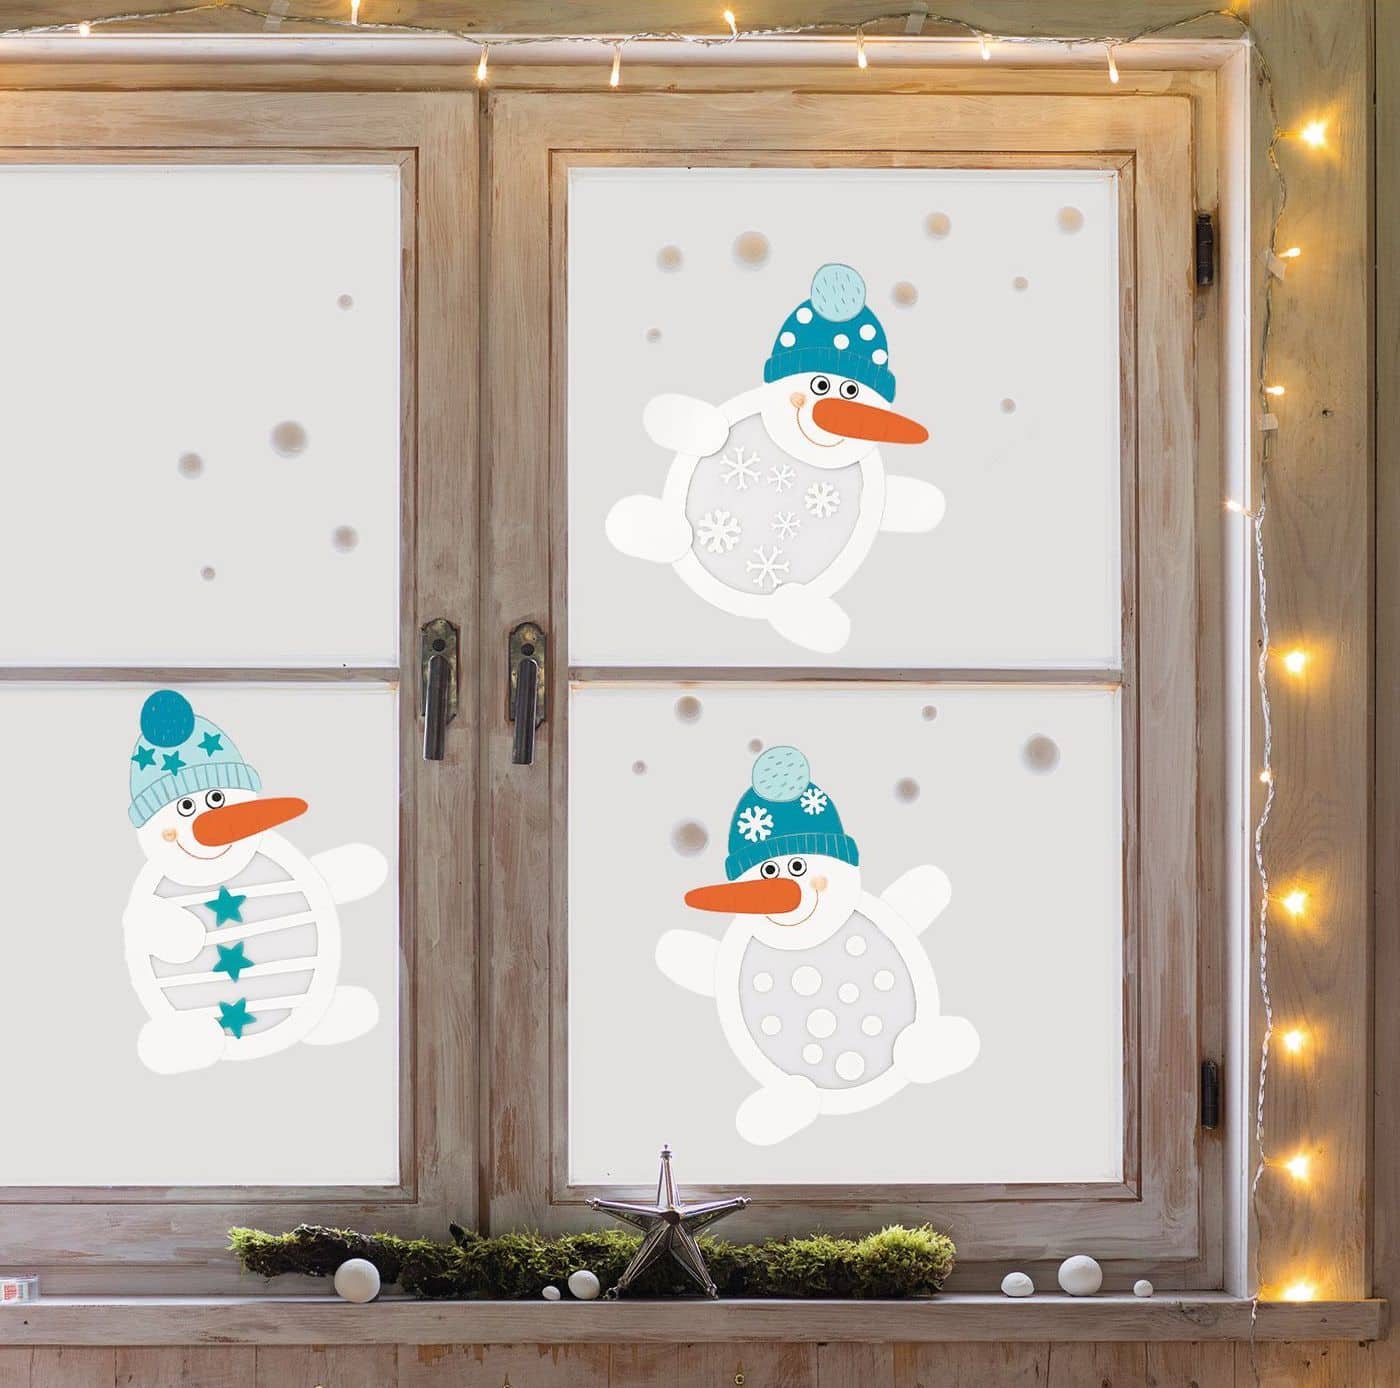 Красивая и весела новогодняя композиция с изображением забавных снеговиков на окне